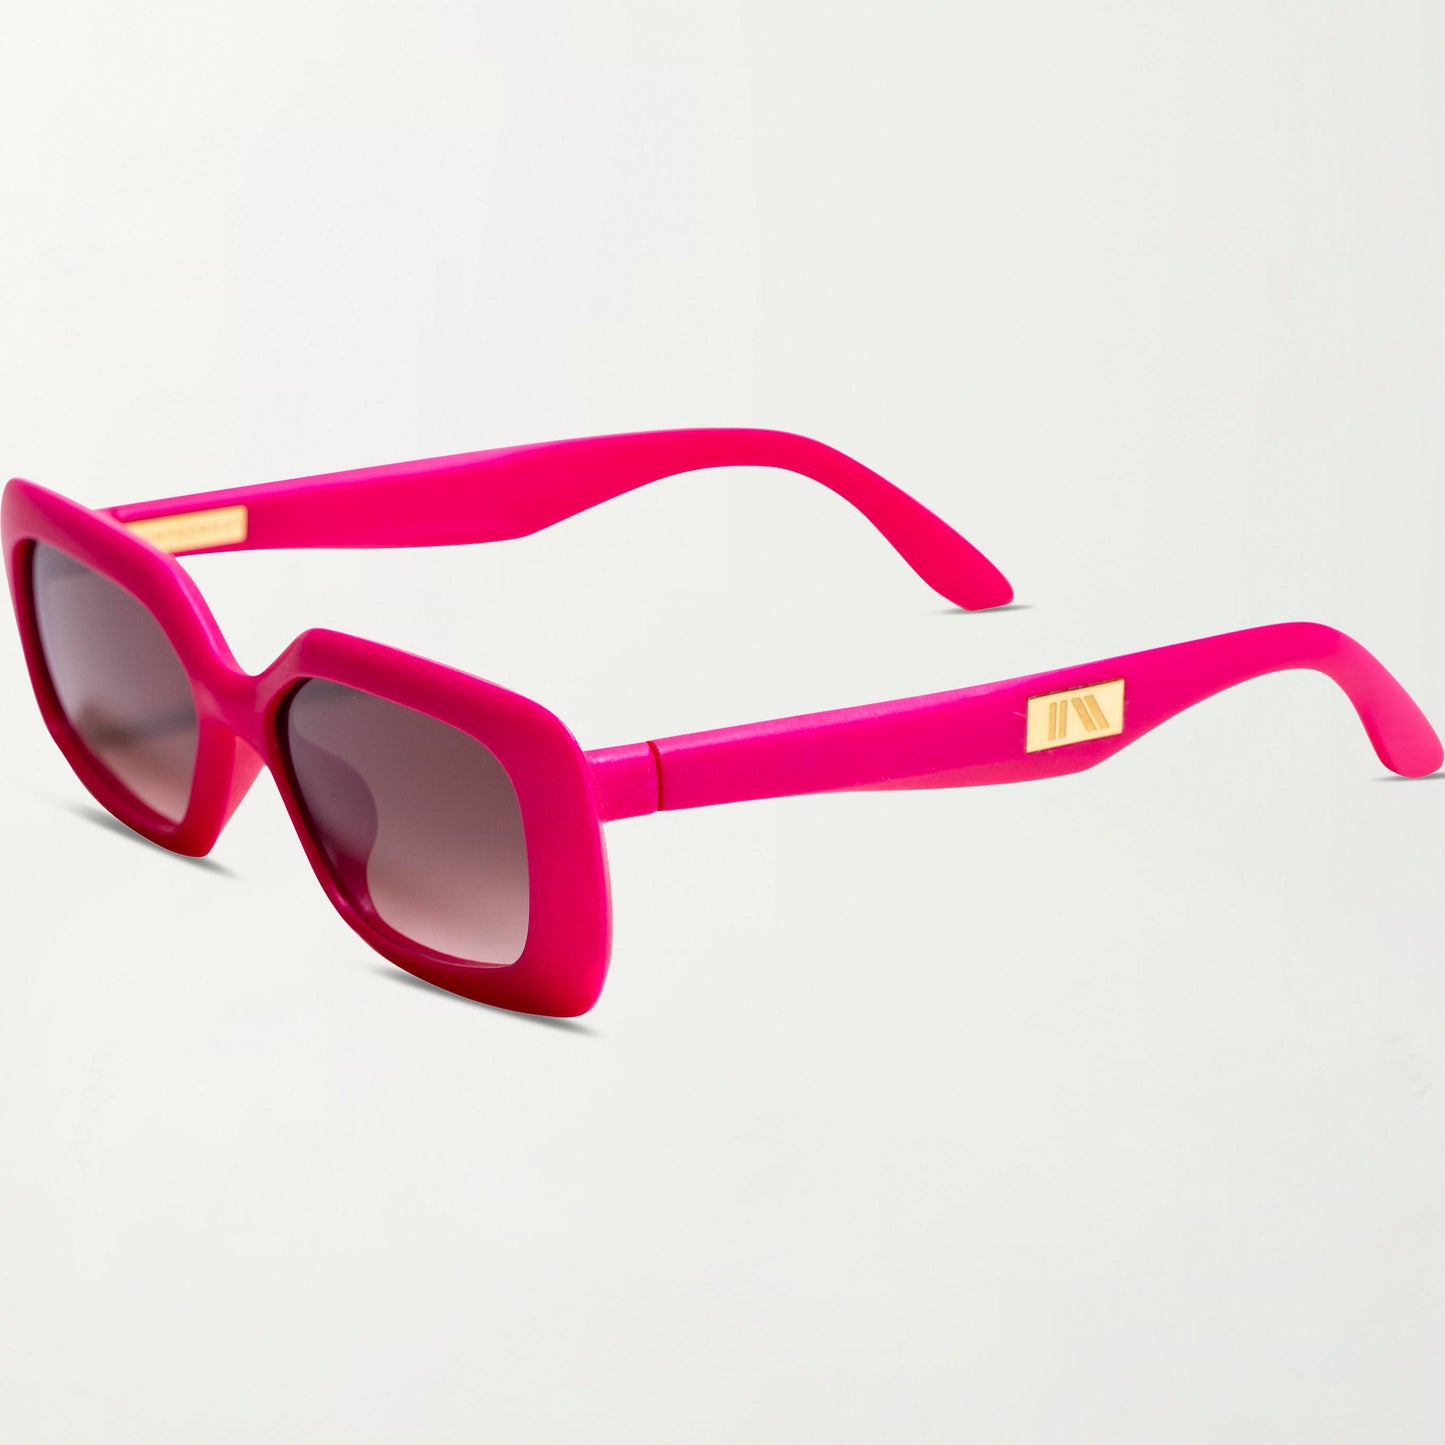 The Paros Sunglasses in Fuchsia